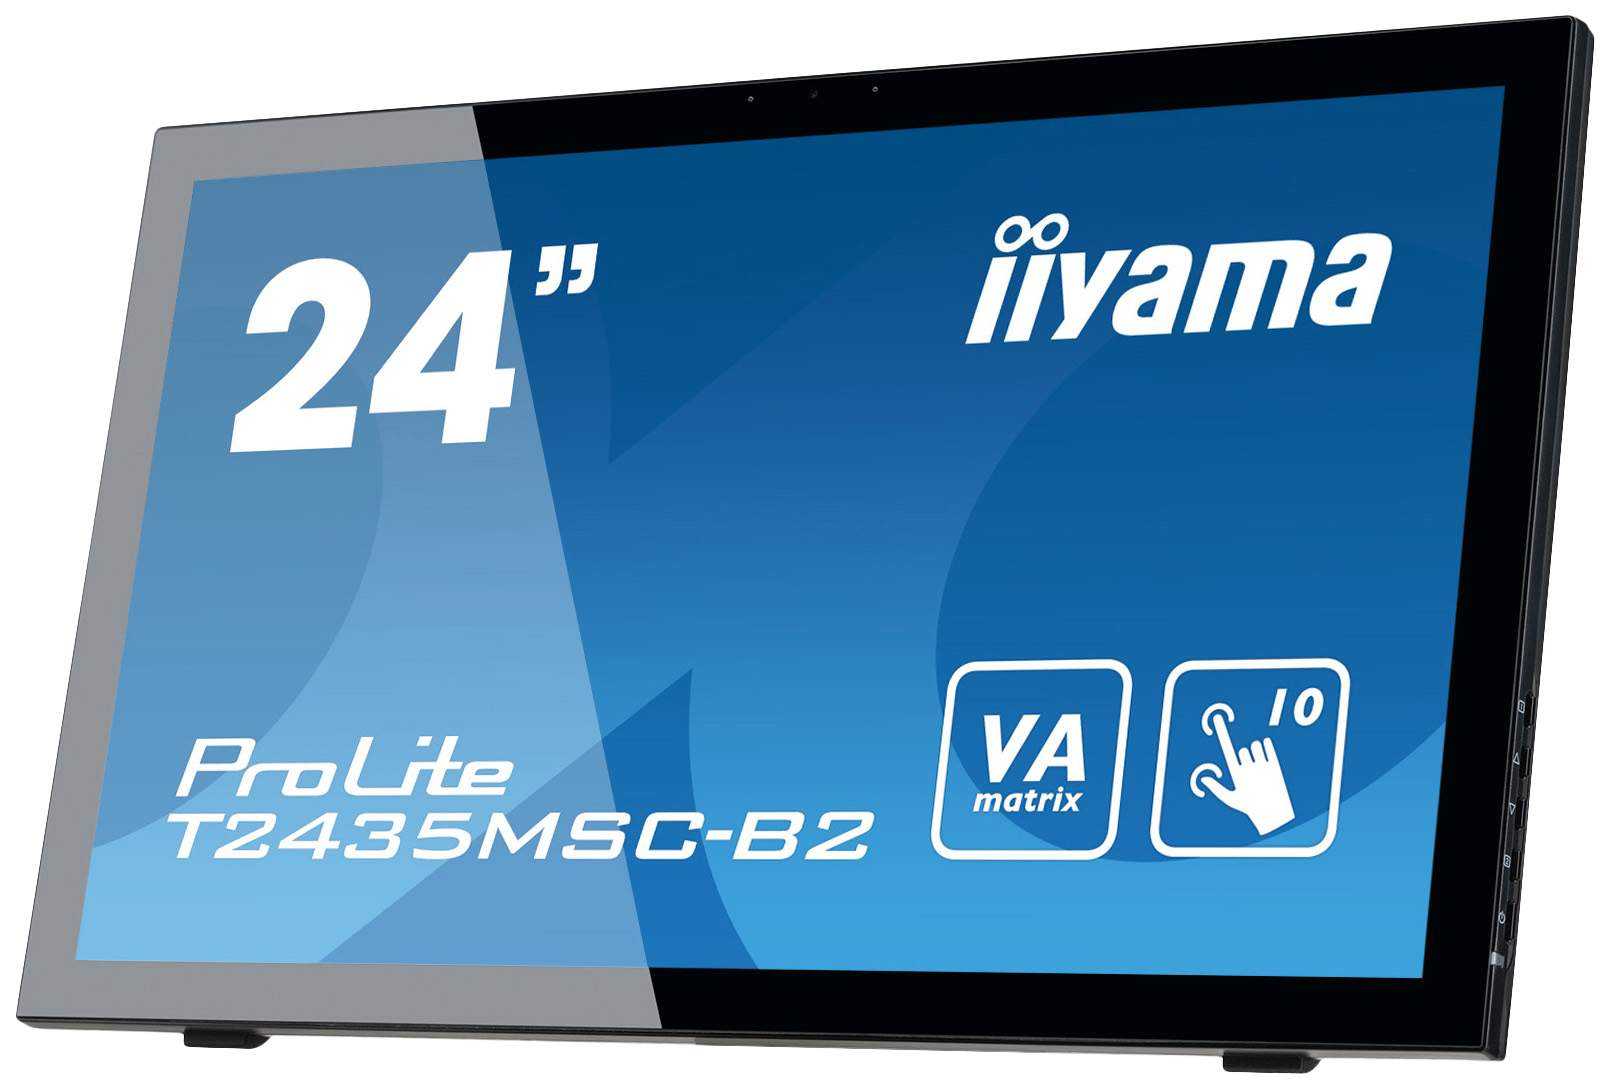 Жк монитор 22" iiyama prolite t2250mts-b1 — купить, цена и характеристики, отзывы